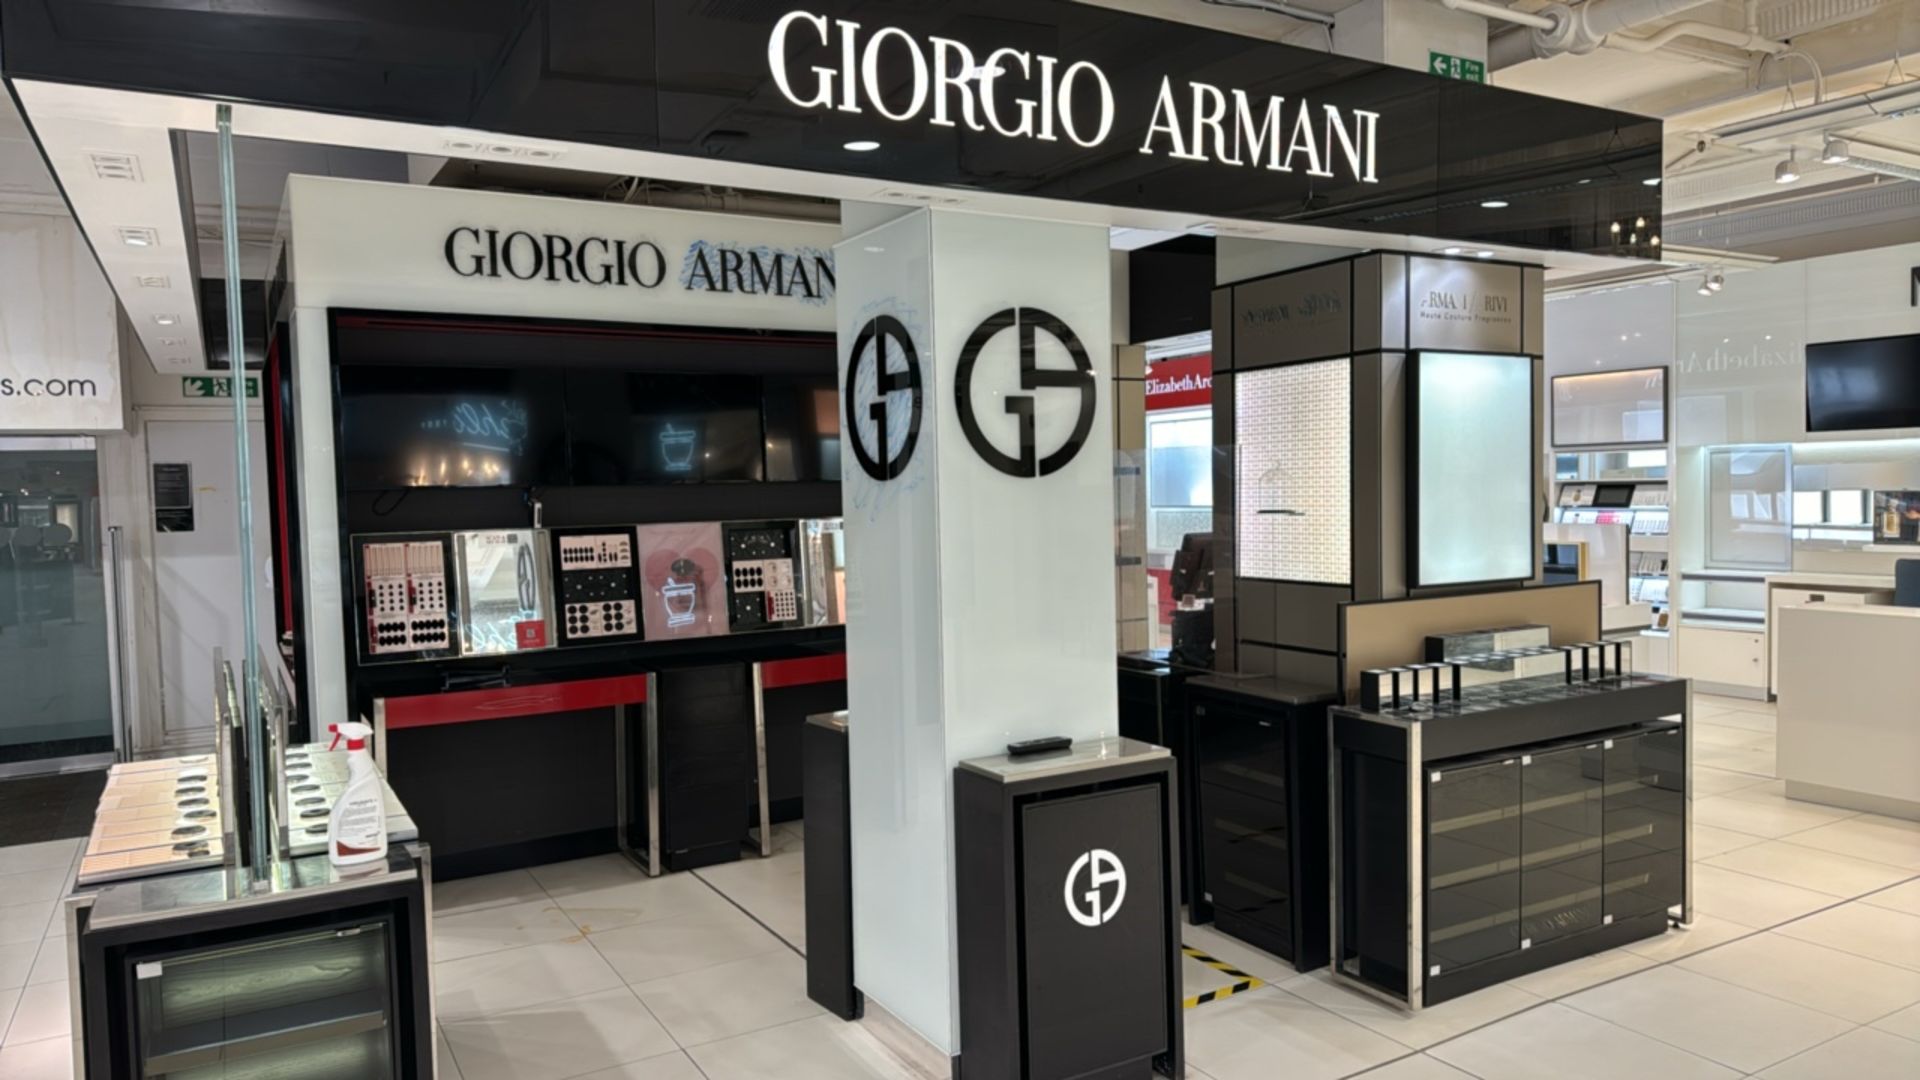 Contents of Giorgio Armani Concession Area